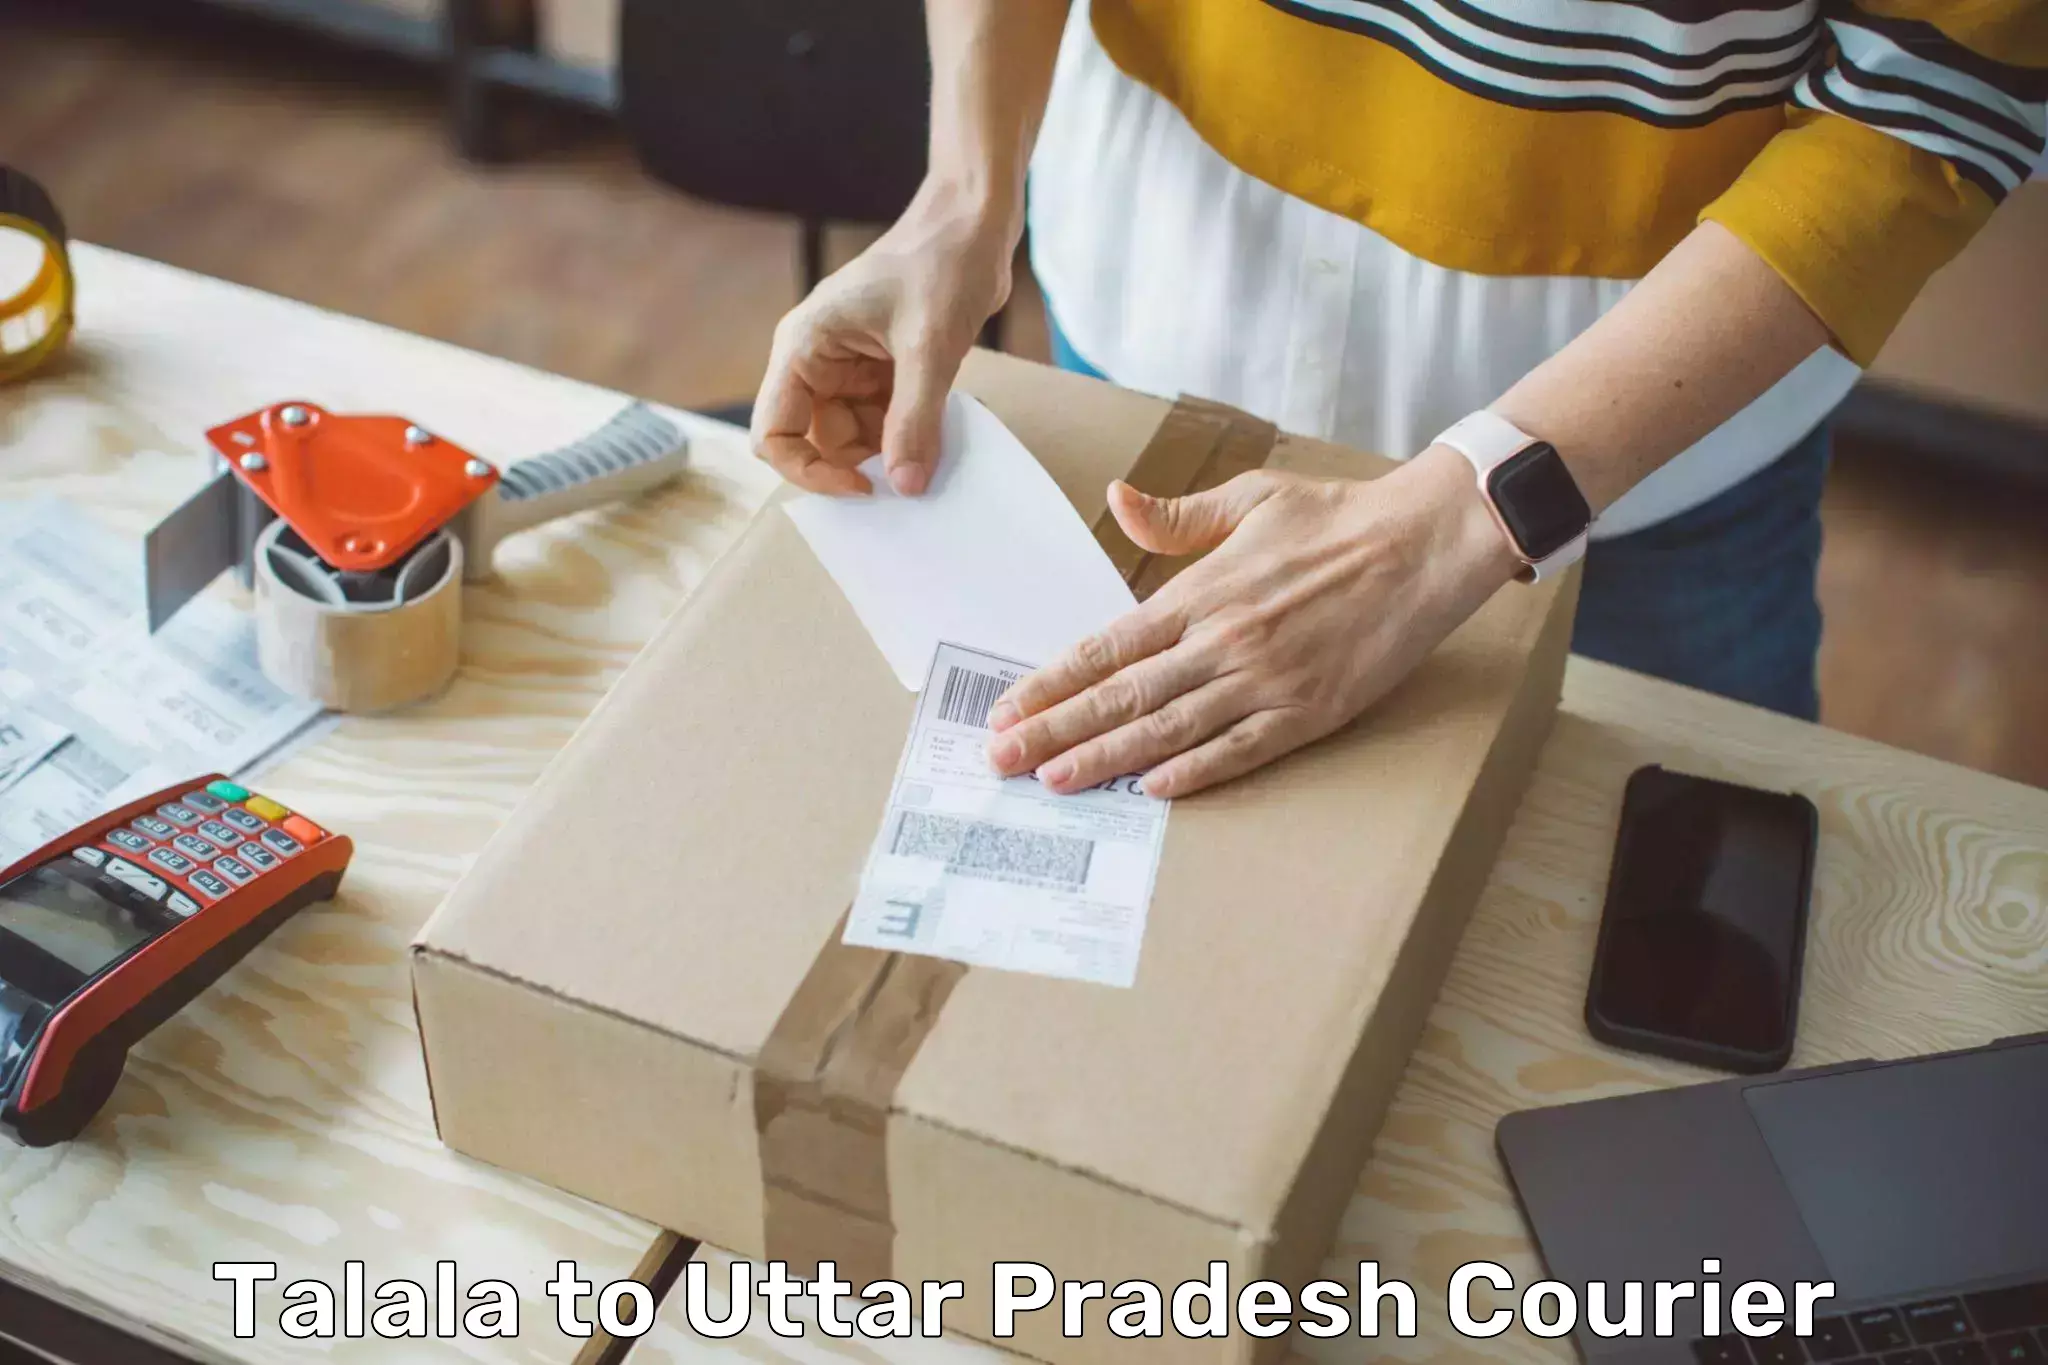 Express delivery capabilities Talala to Uttar Pradesh